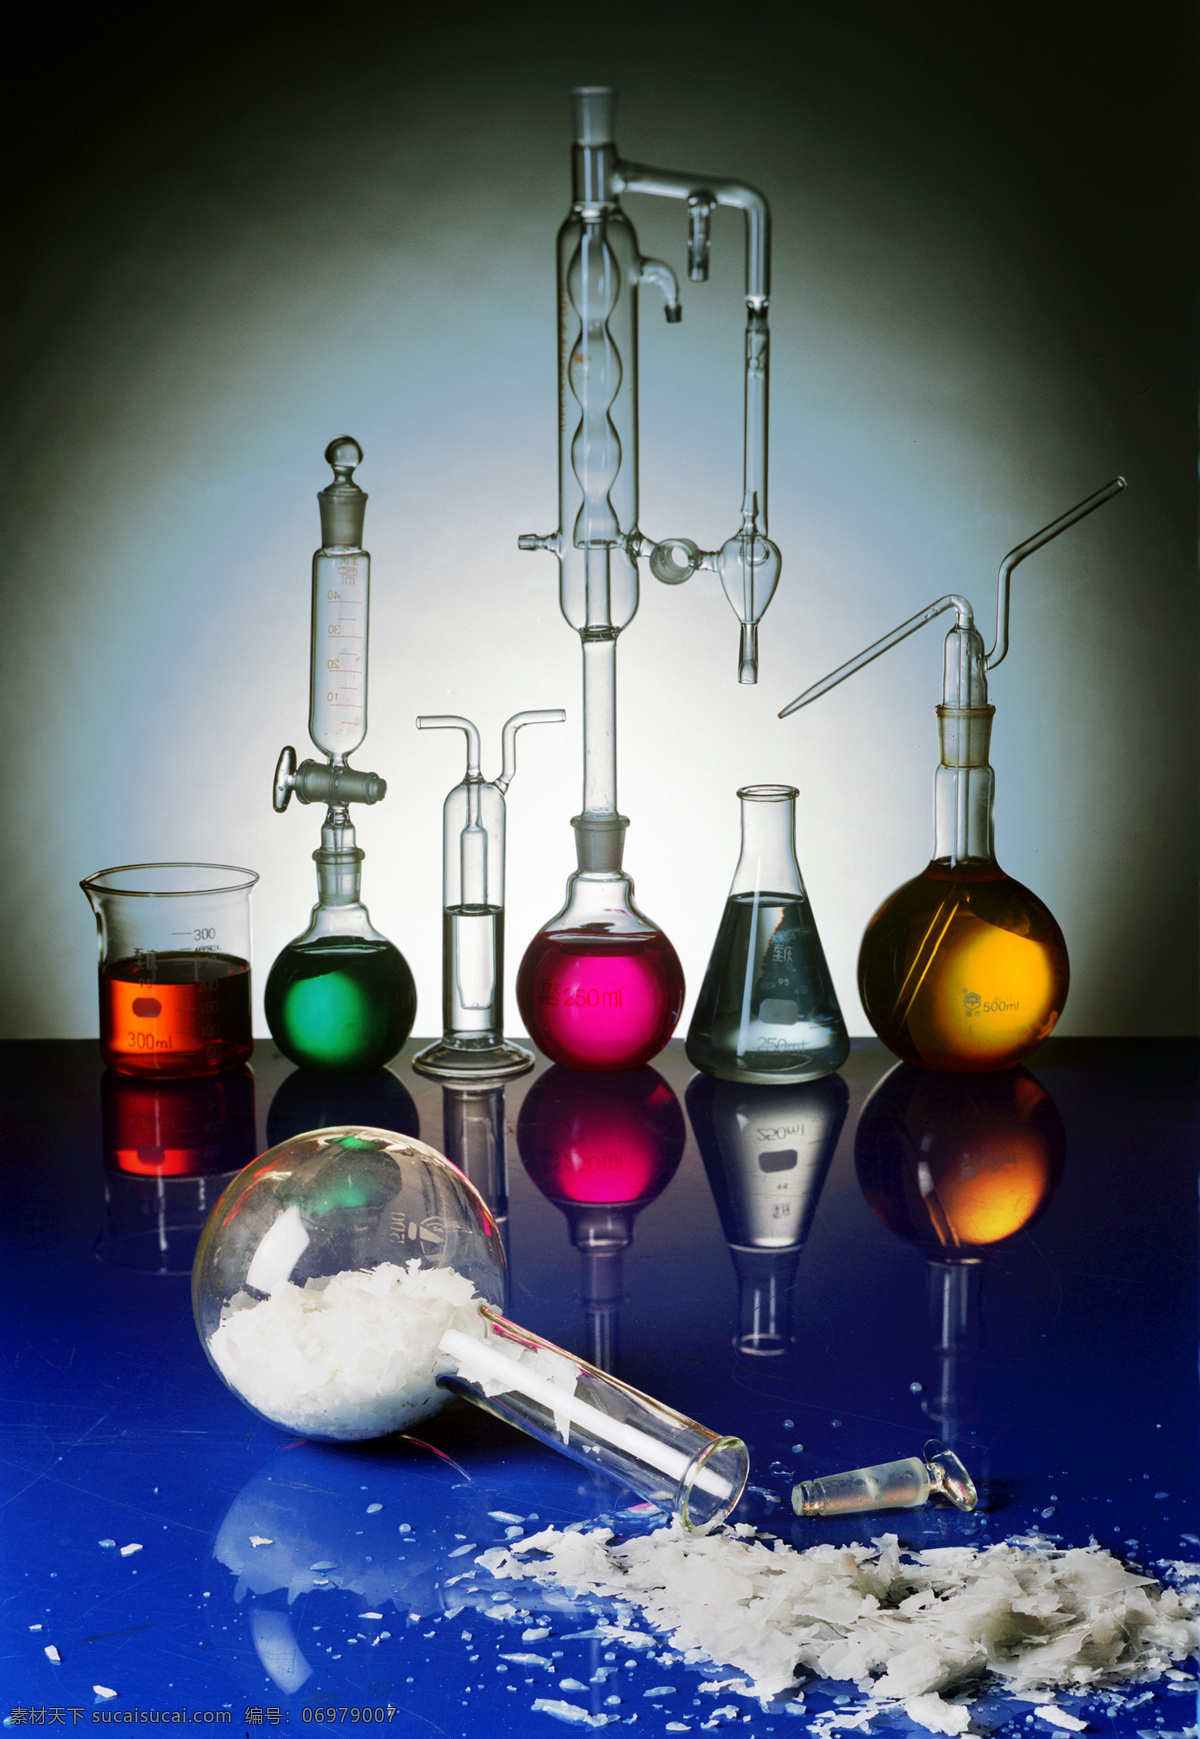 量杯 烧杯 试管 化学实验用具 化学药物 现代科技 科学研究